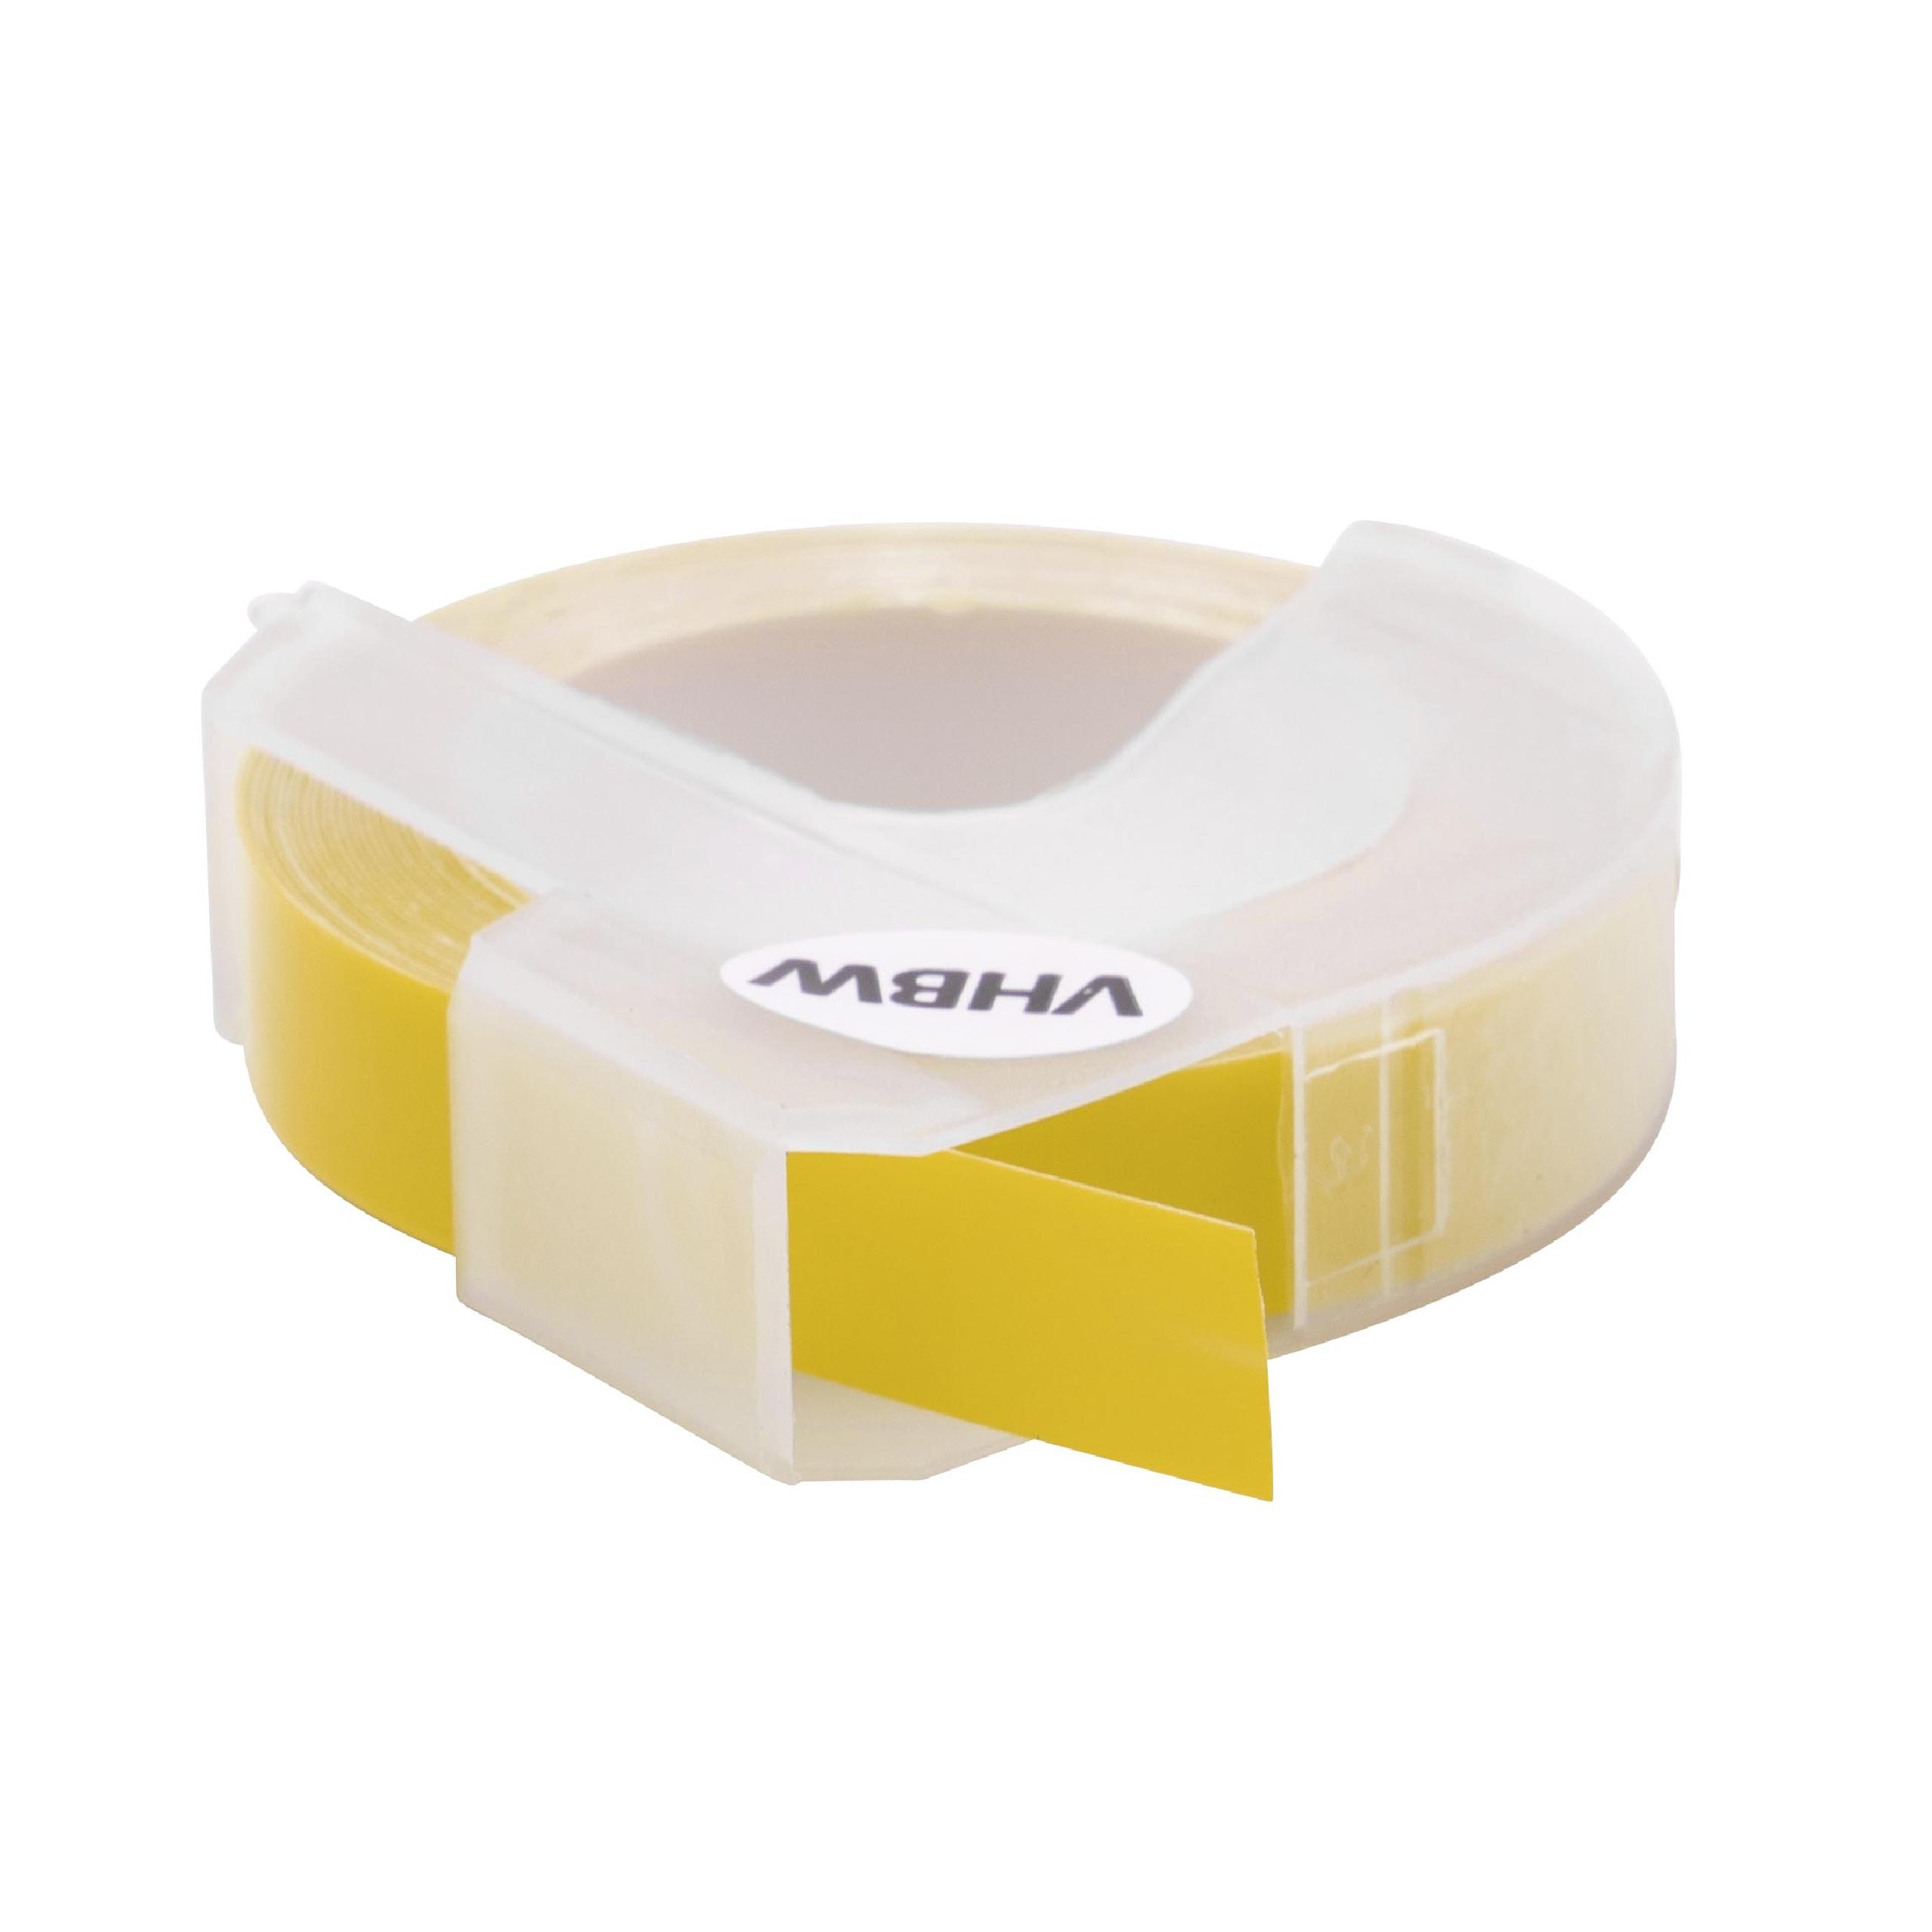 Cassette à ruban, gaufrage relief remplace Dymo S0898160, 520108 - 9mm lettrage Blanc ruban Jaune